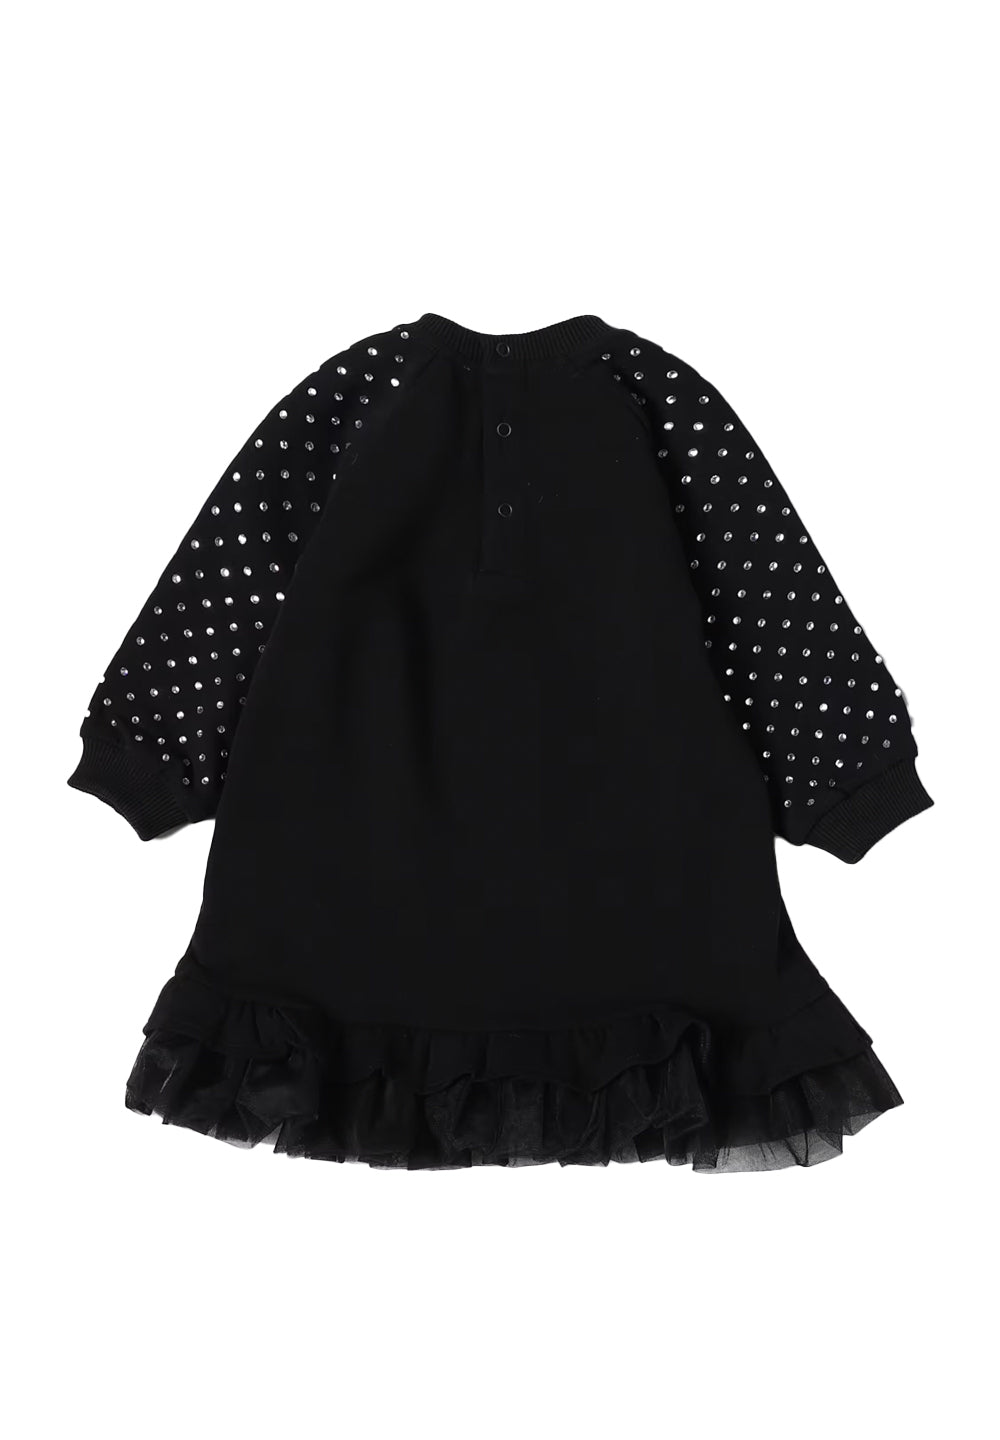 Black dress for baby girl